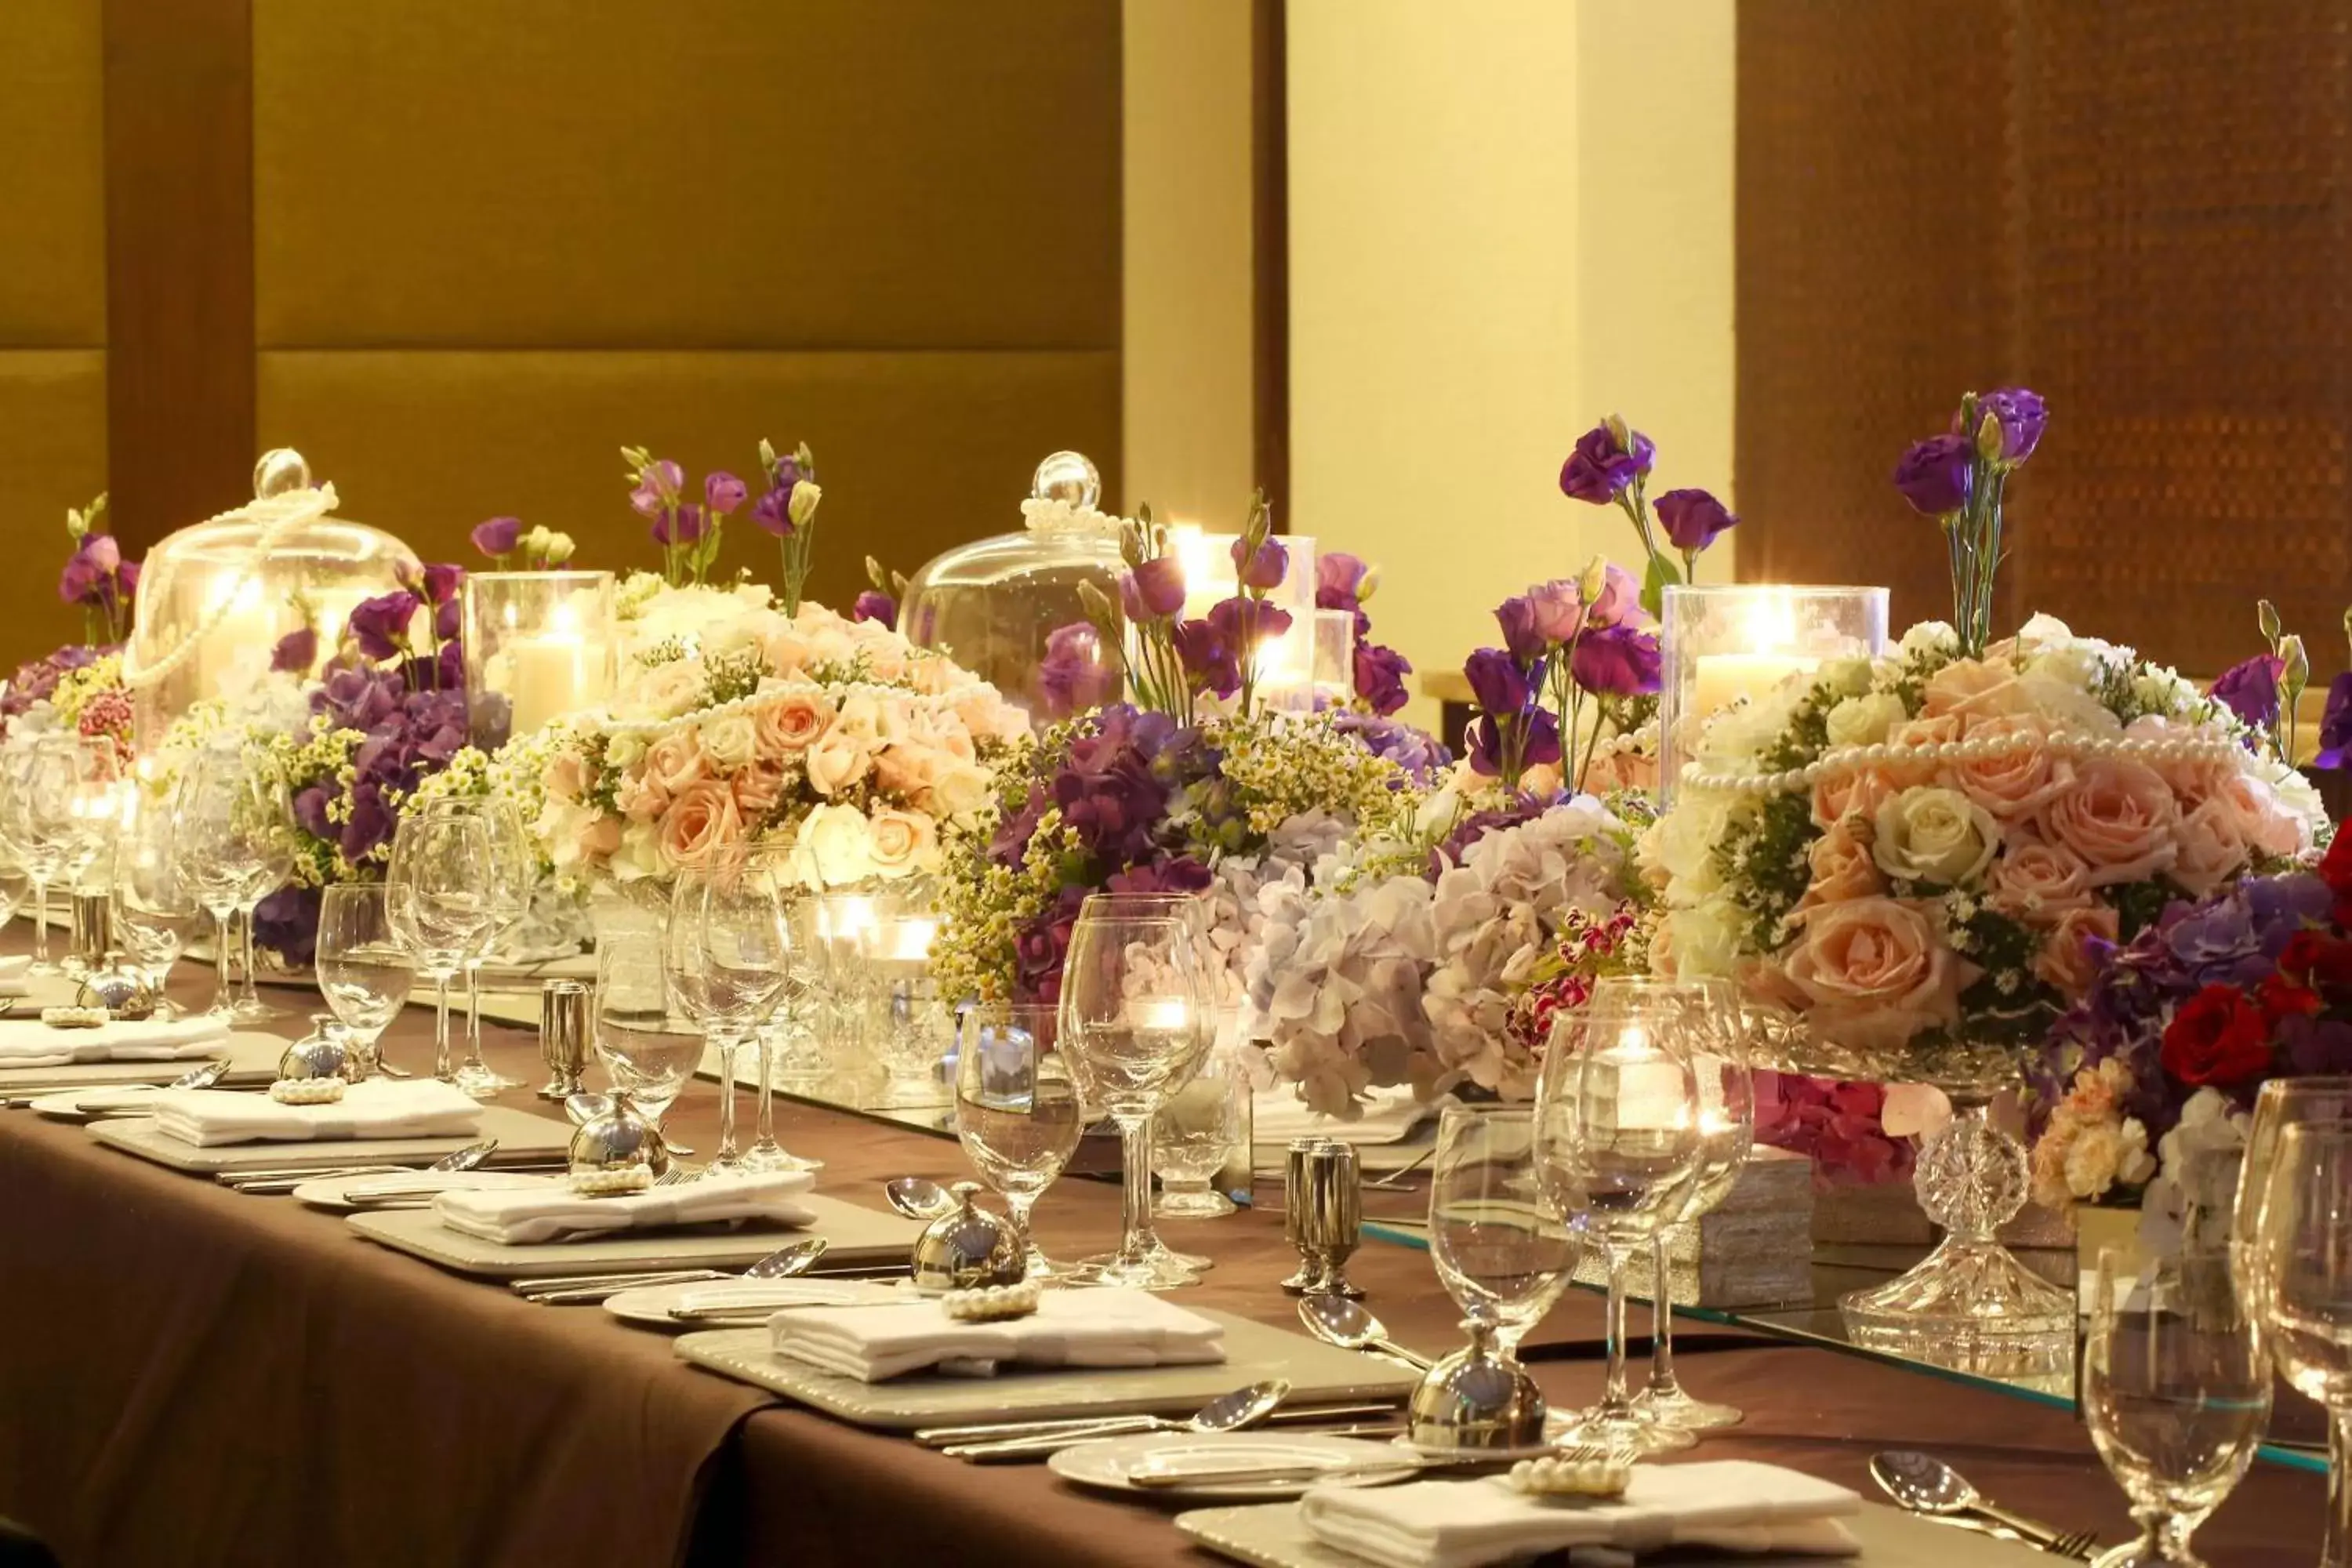 Banquet/Function facilities, Banquet Facilities in Manila Marriott Hotel